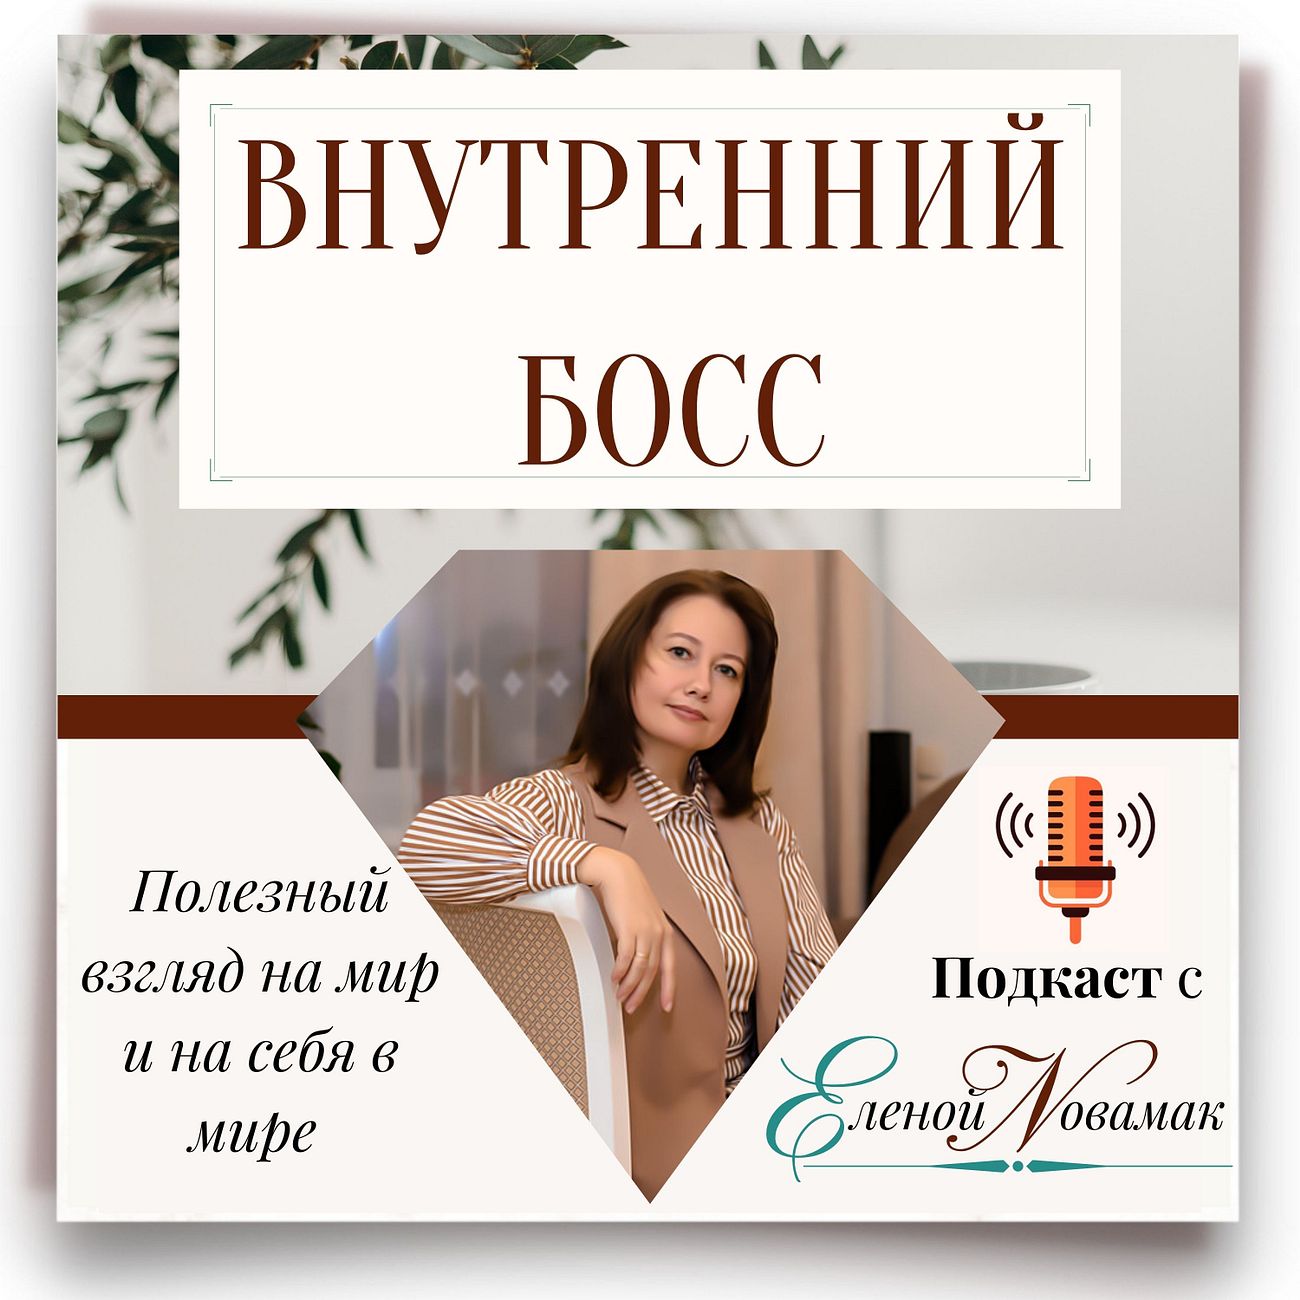 Внутренний БОСС - Значимый БРЕНД с Еленой Новамак